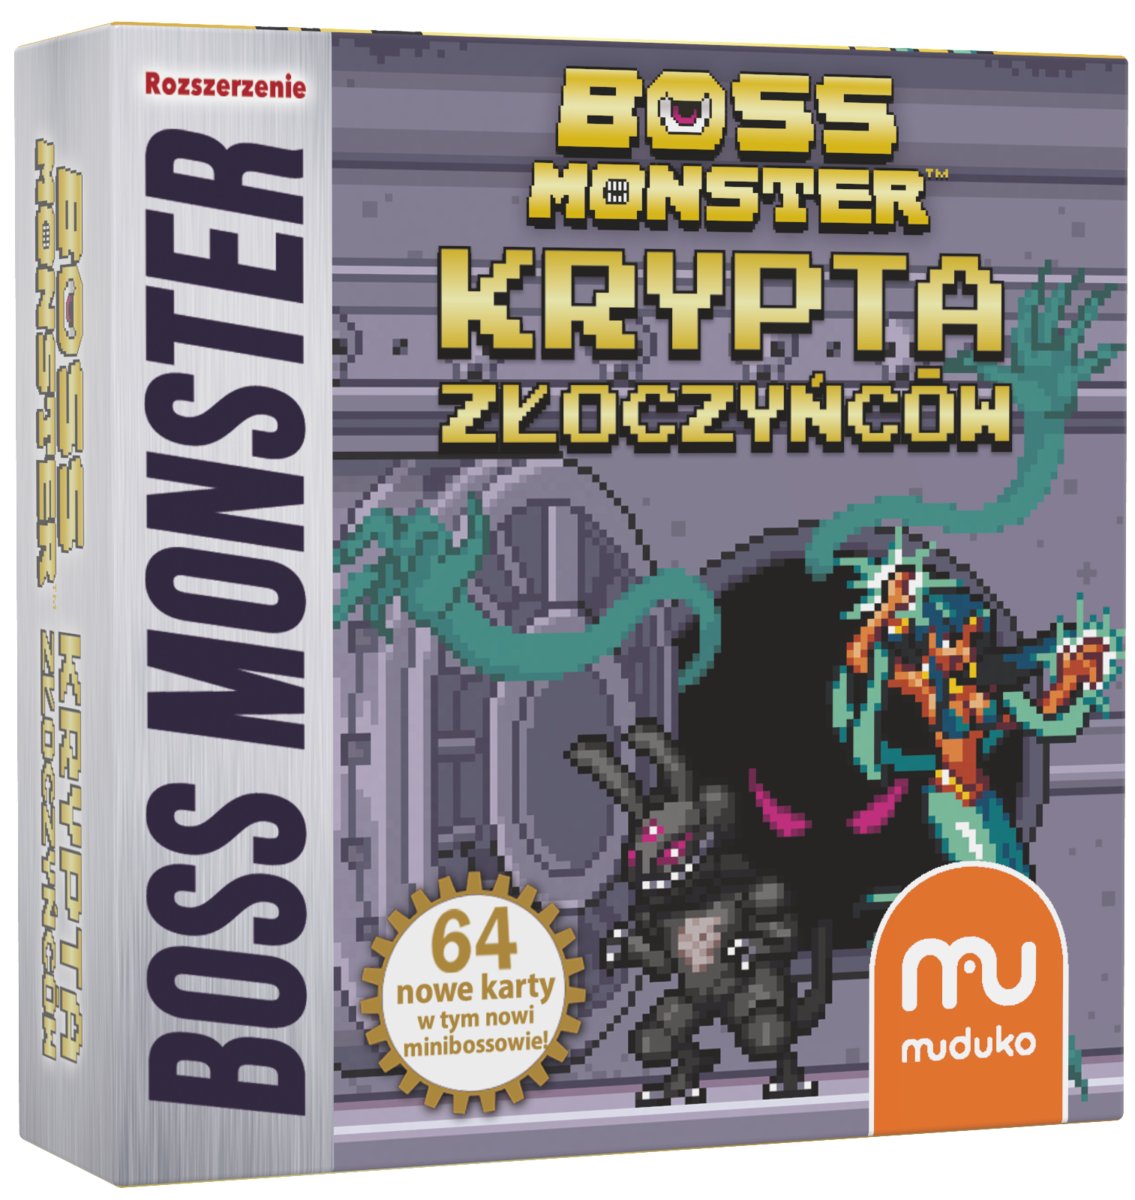 Muduko, dodatek do gry Boss Monster Krypta Złoczyńców